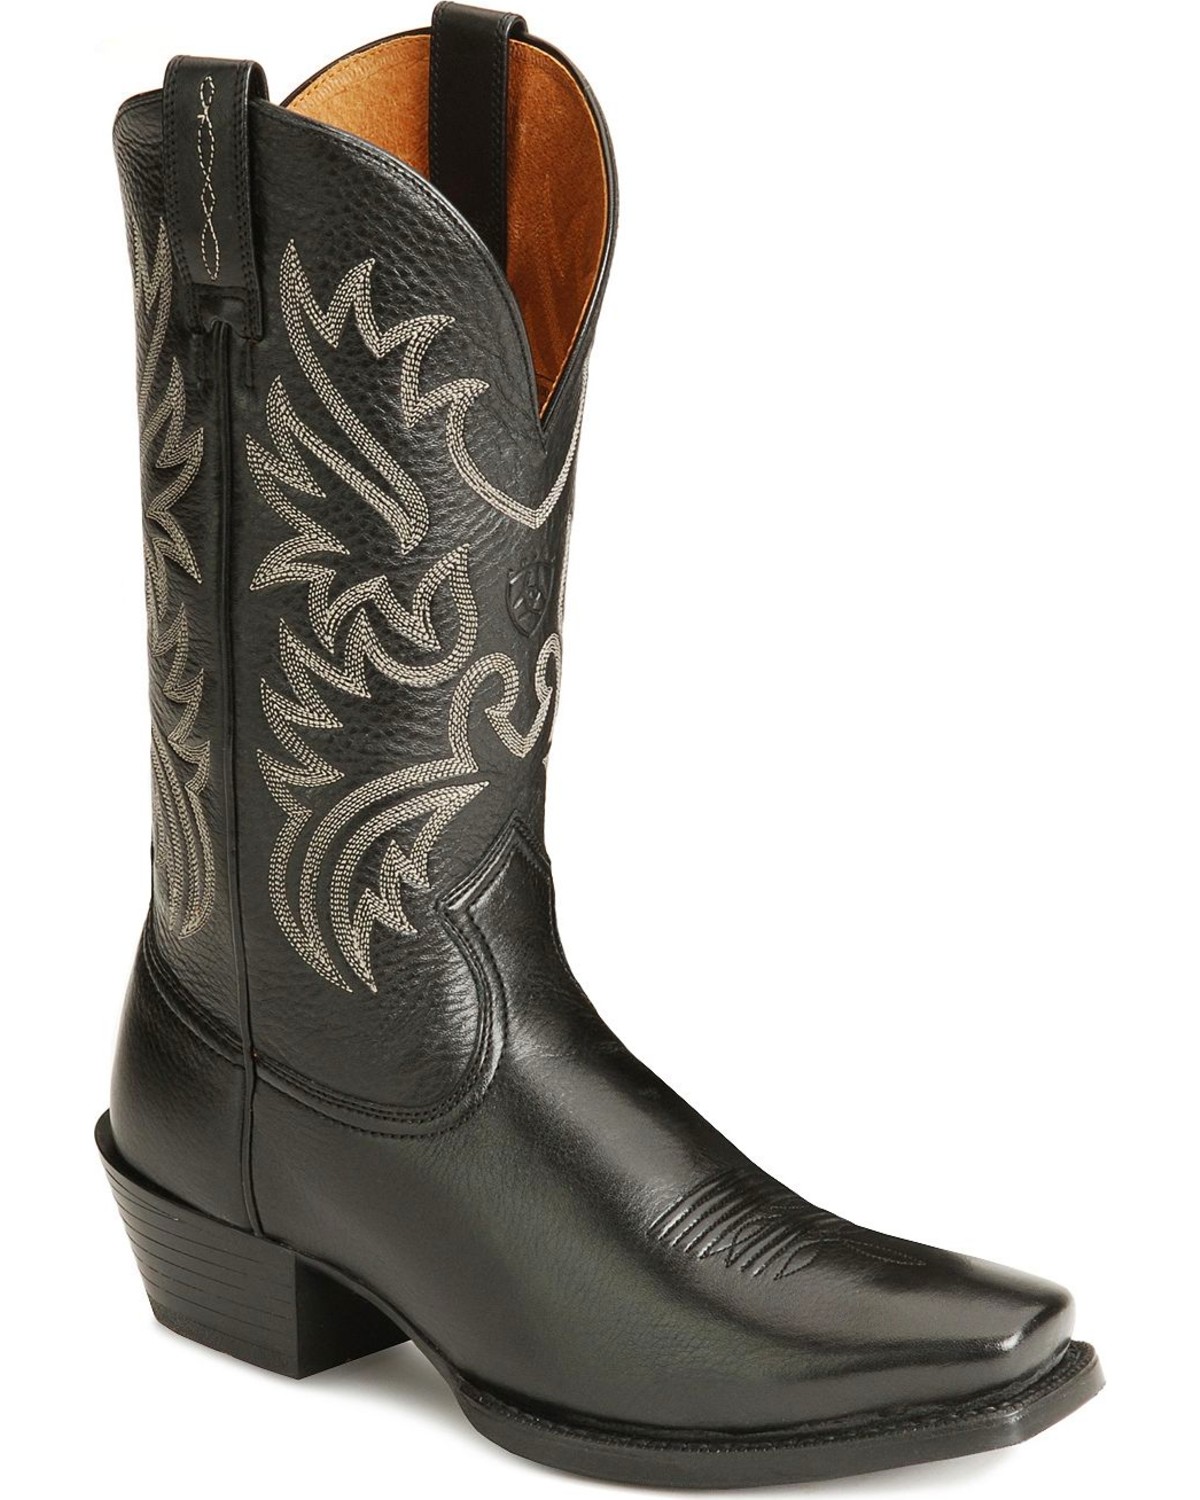 Men's Dress Cowboy Boots